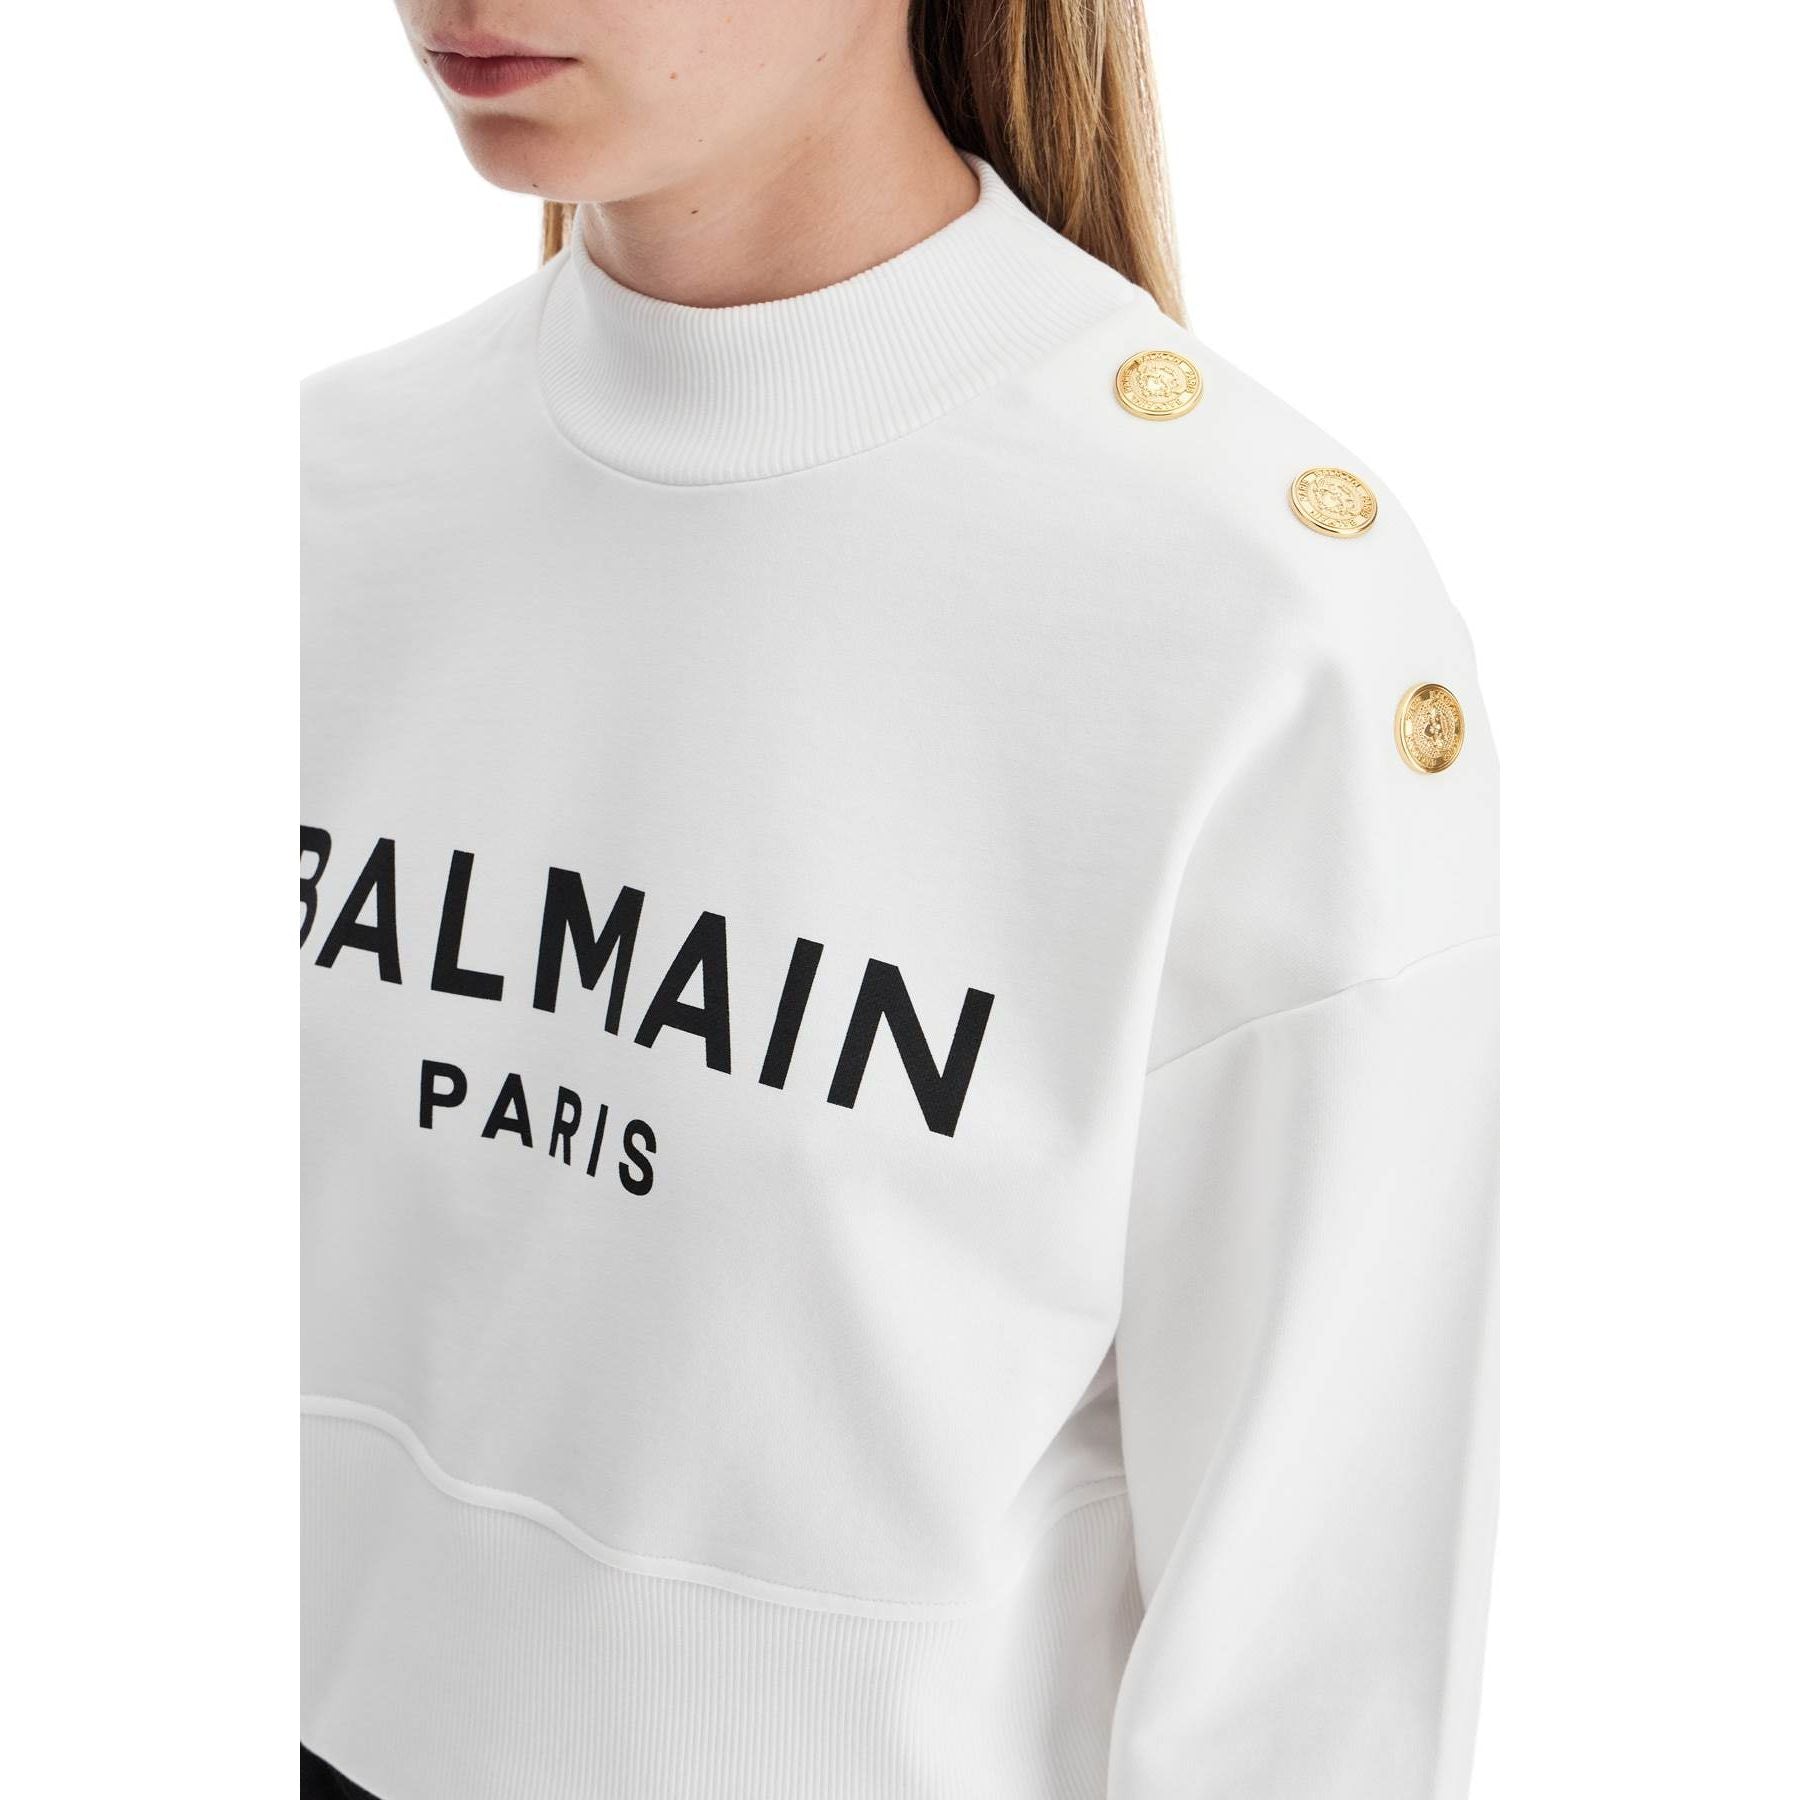 Organic Cotton Balmain Paris Cropped Sweatshirt